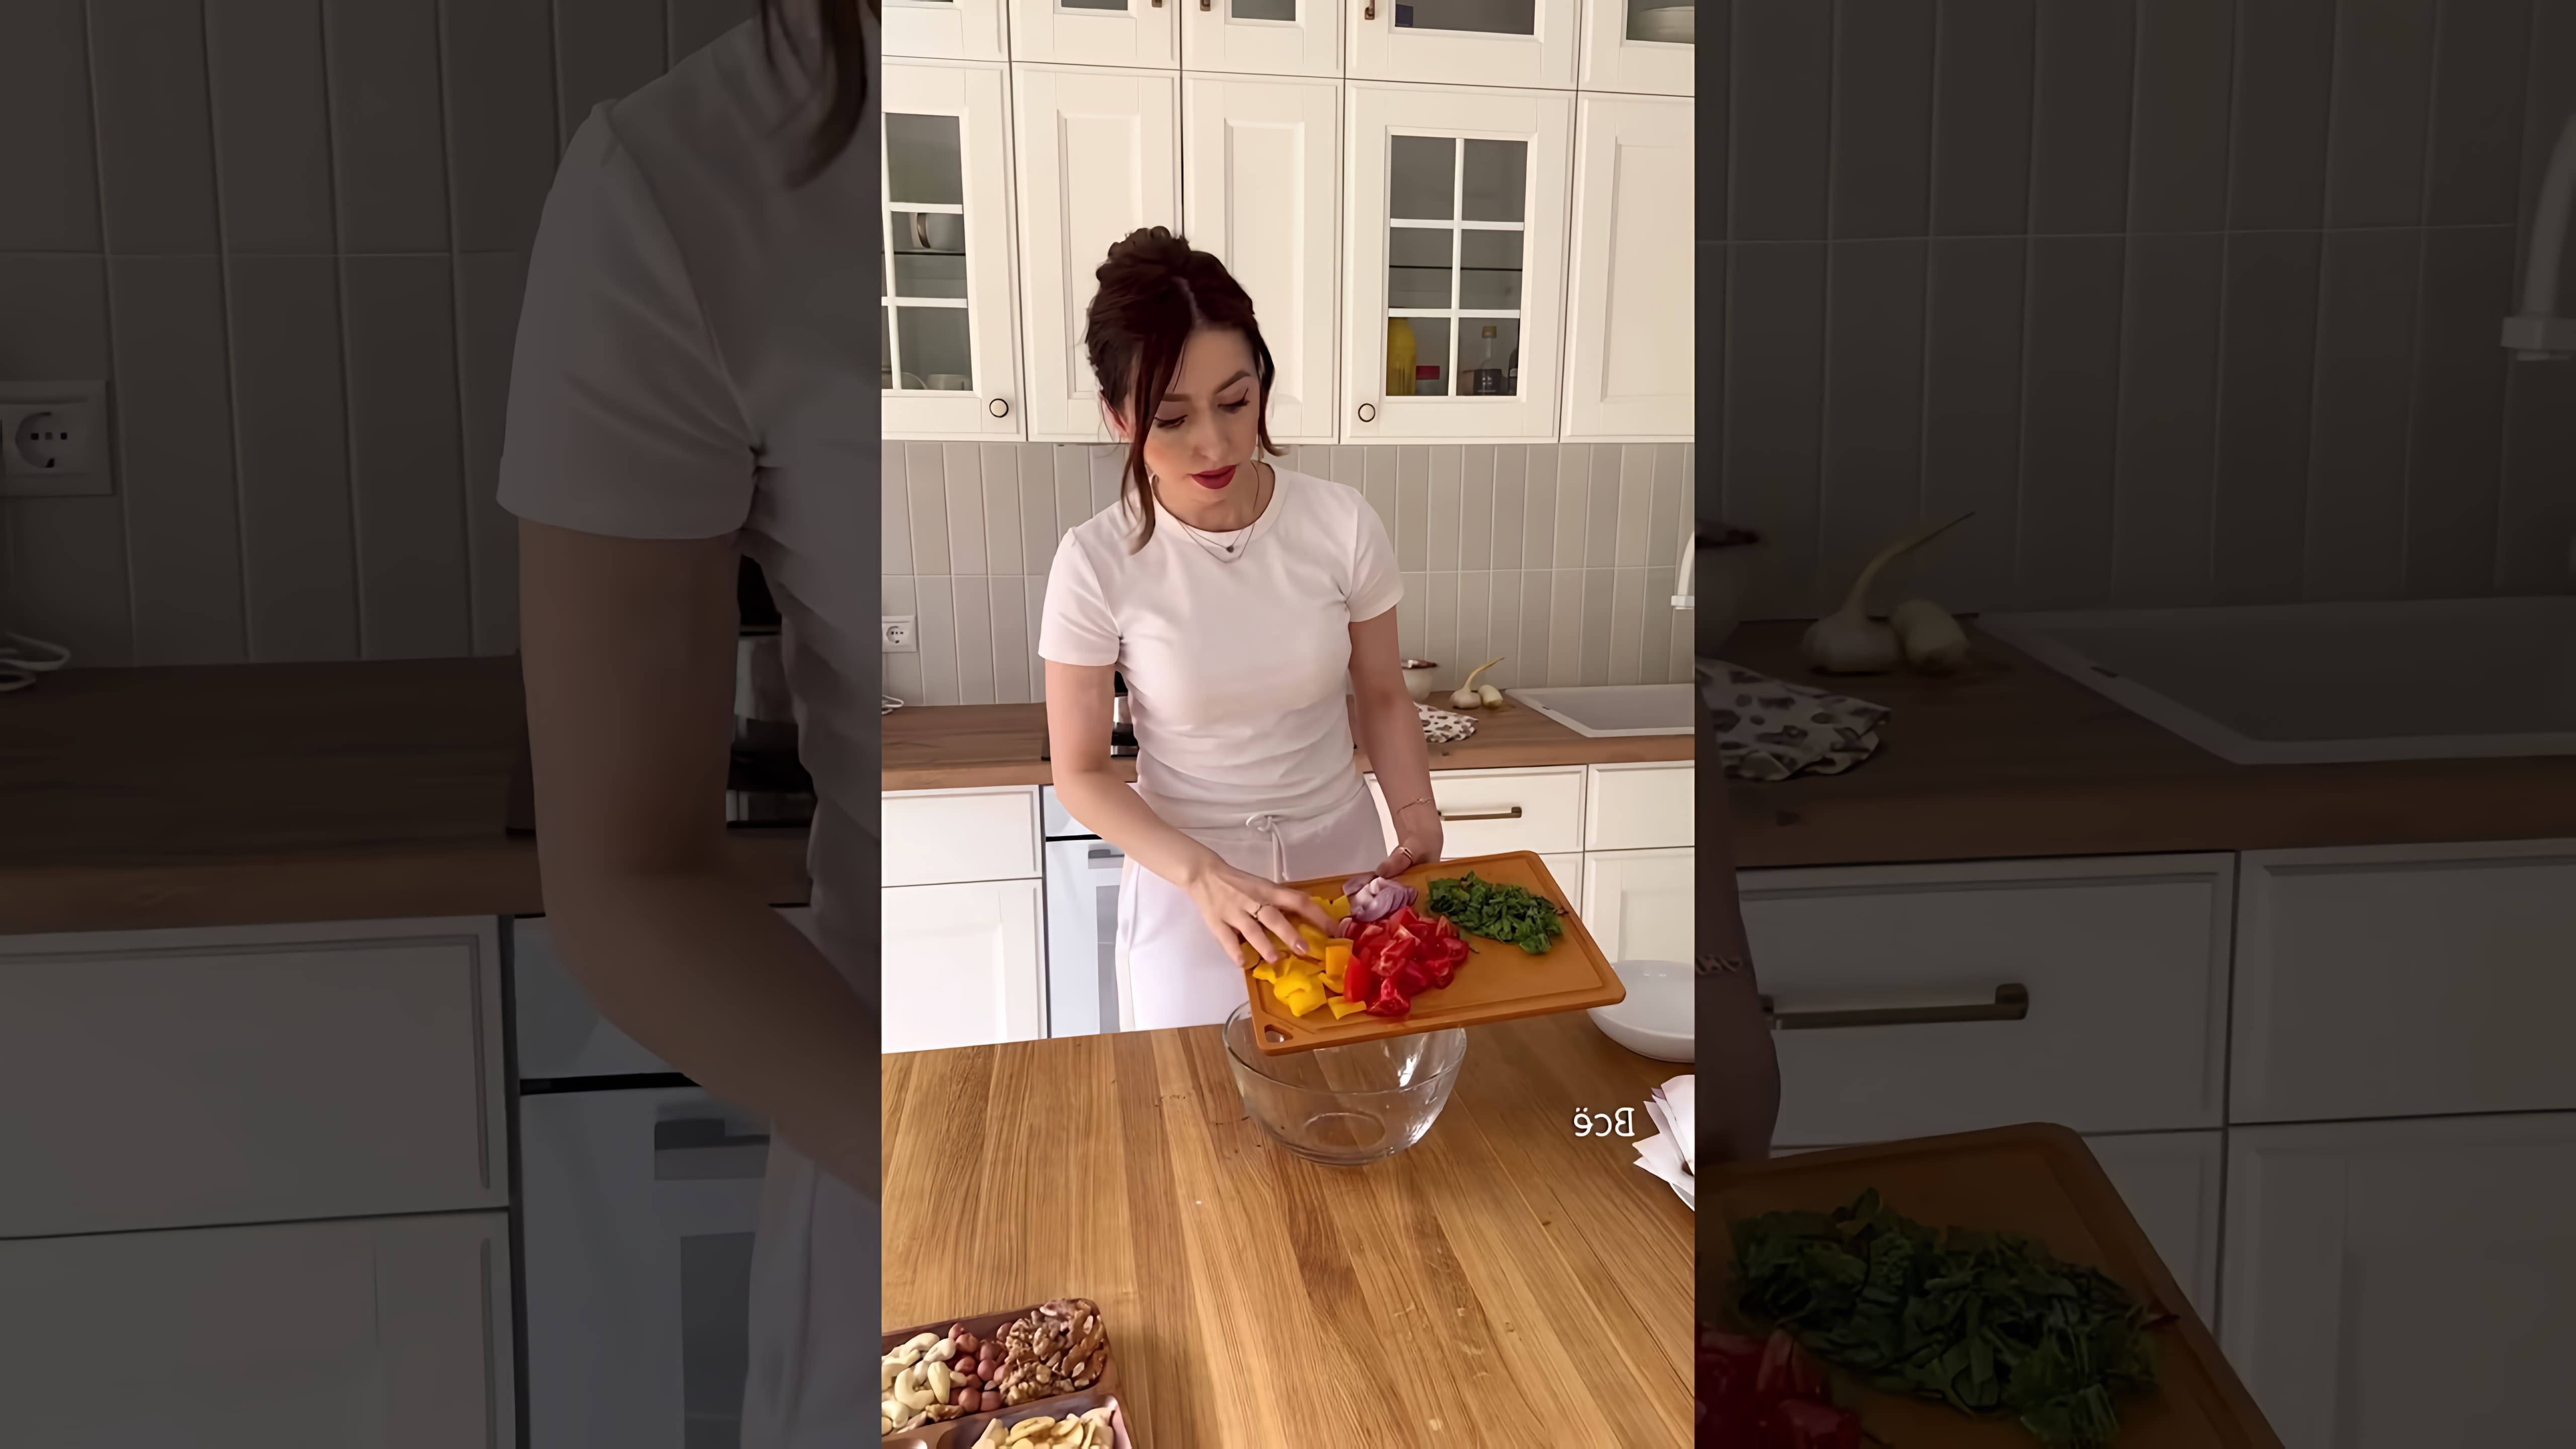 В этом видео демонстрируется процесс приготовления салата с хрустящими баклажанами